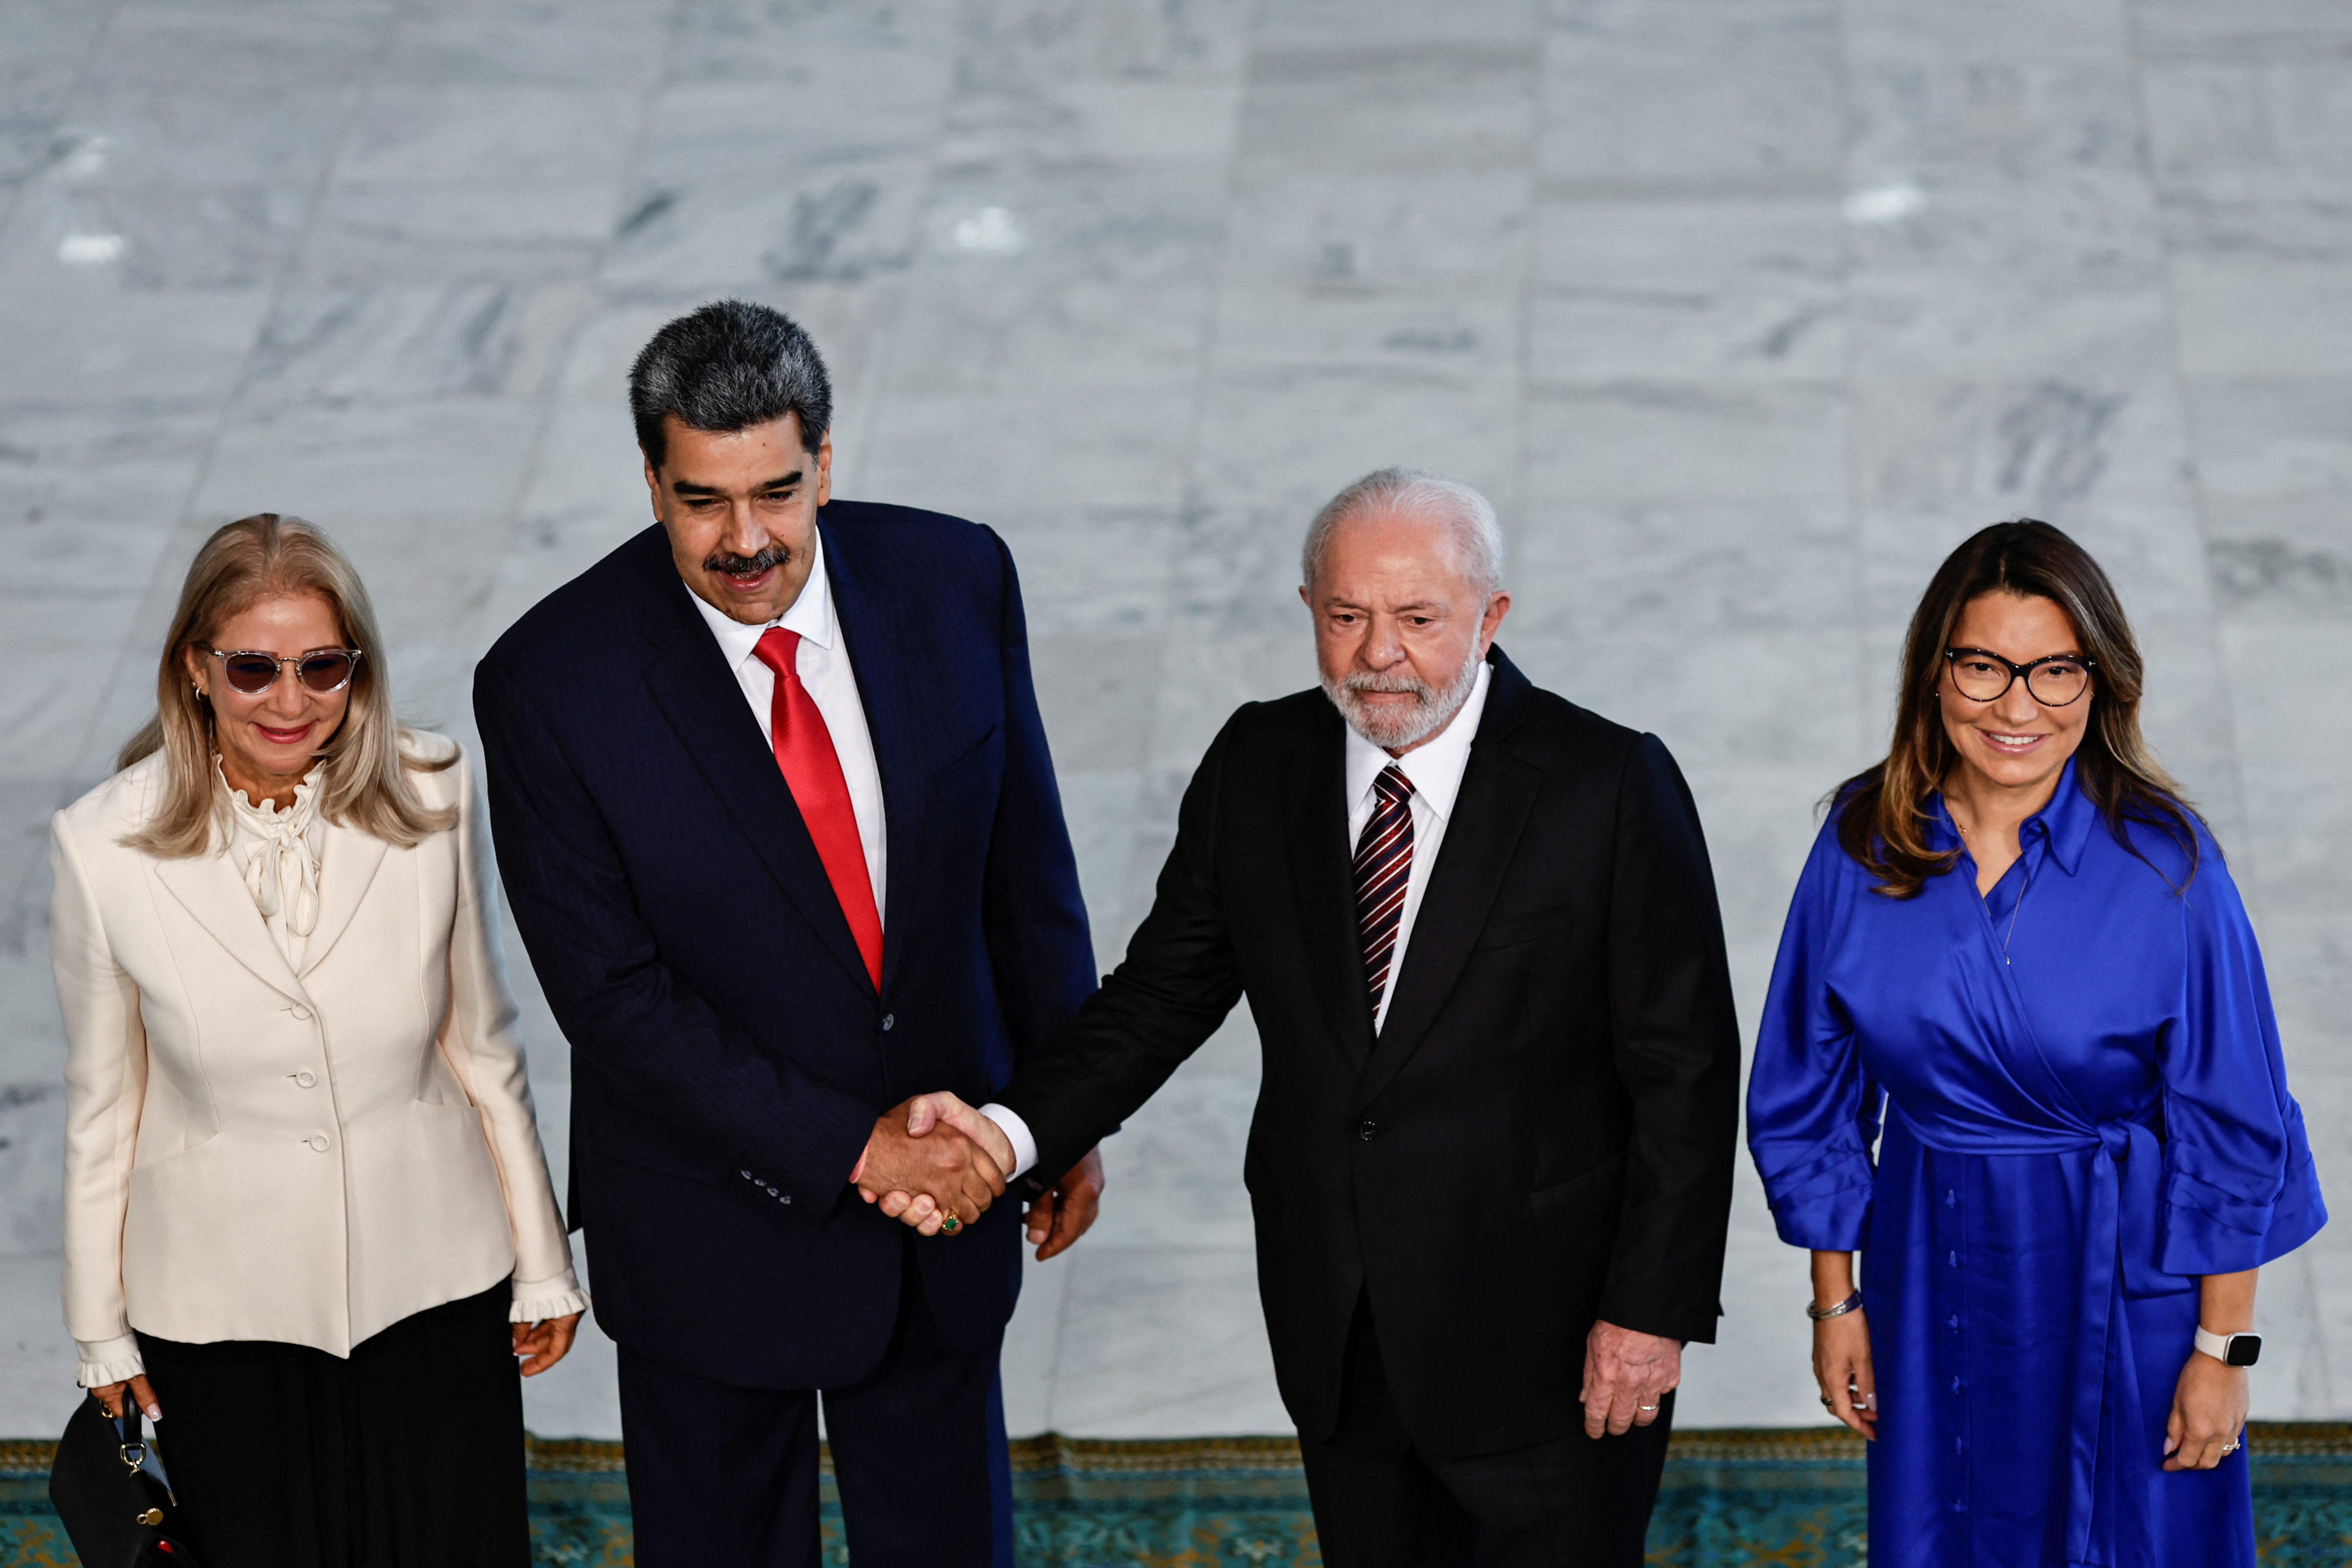 Lula da Silva profundiza su acercamiento al chavismo: recibe al dictador Nicolás Maduro en Brasilia